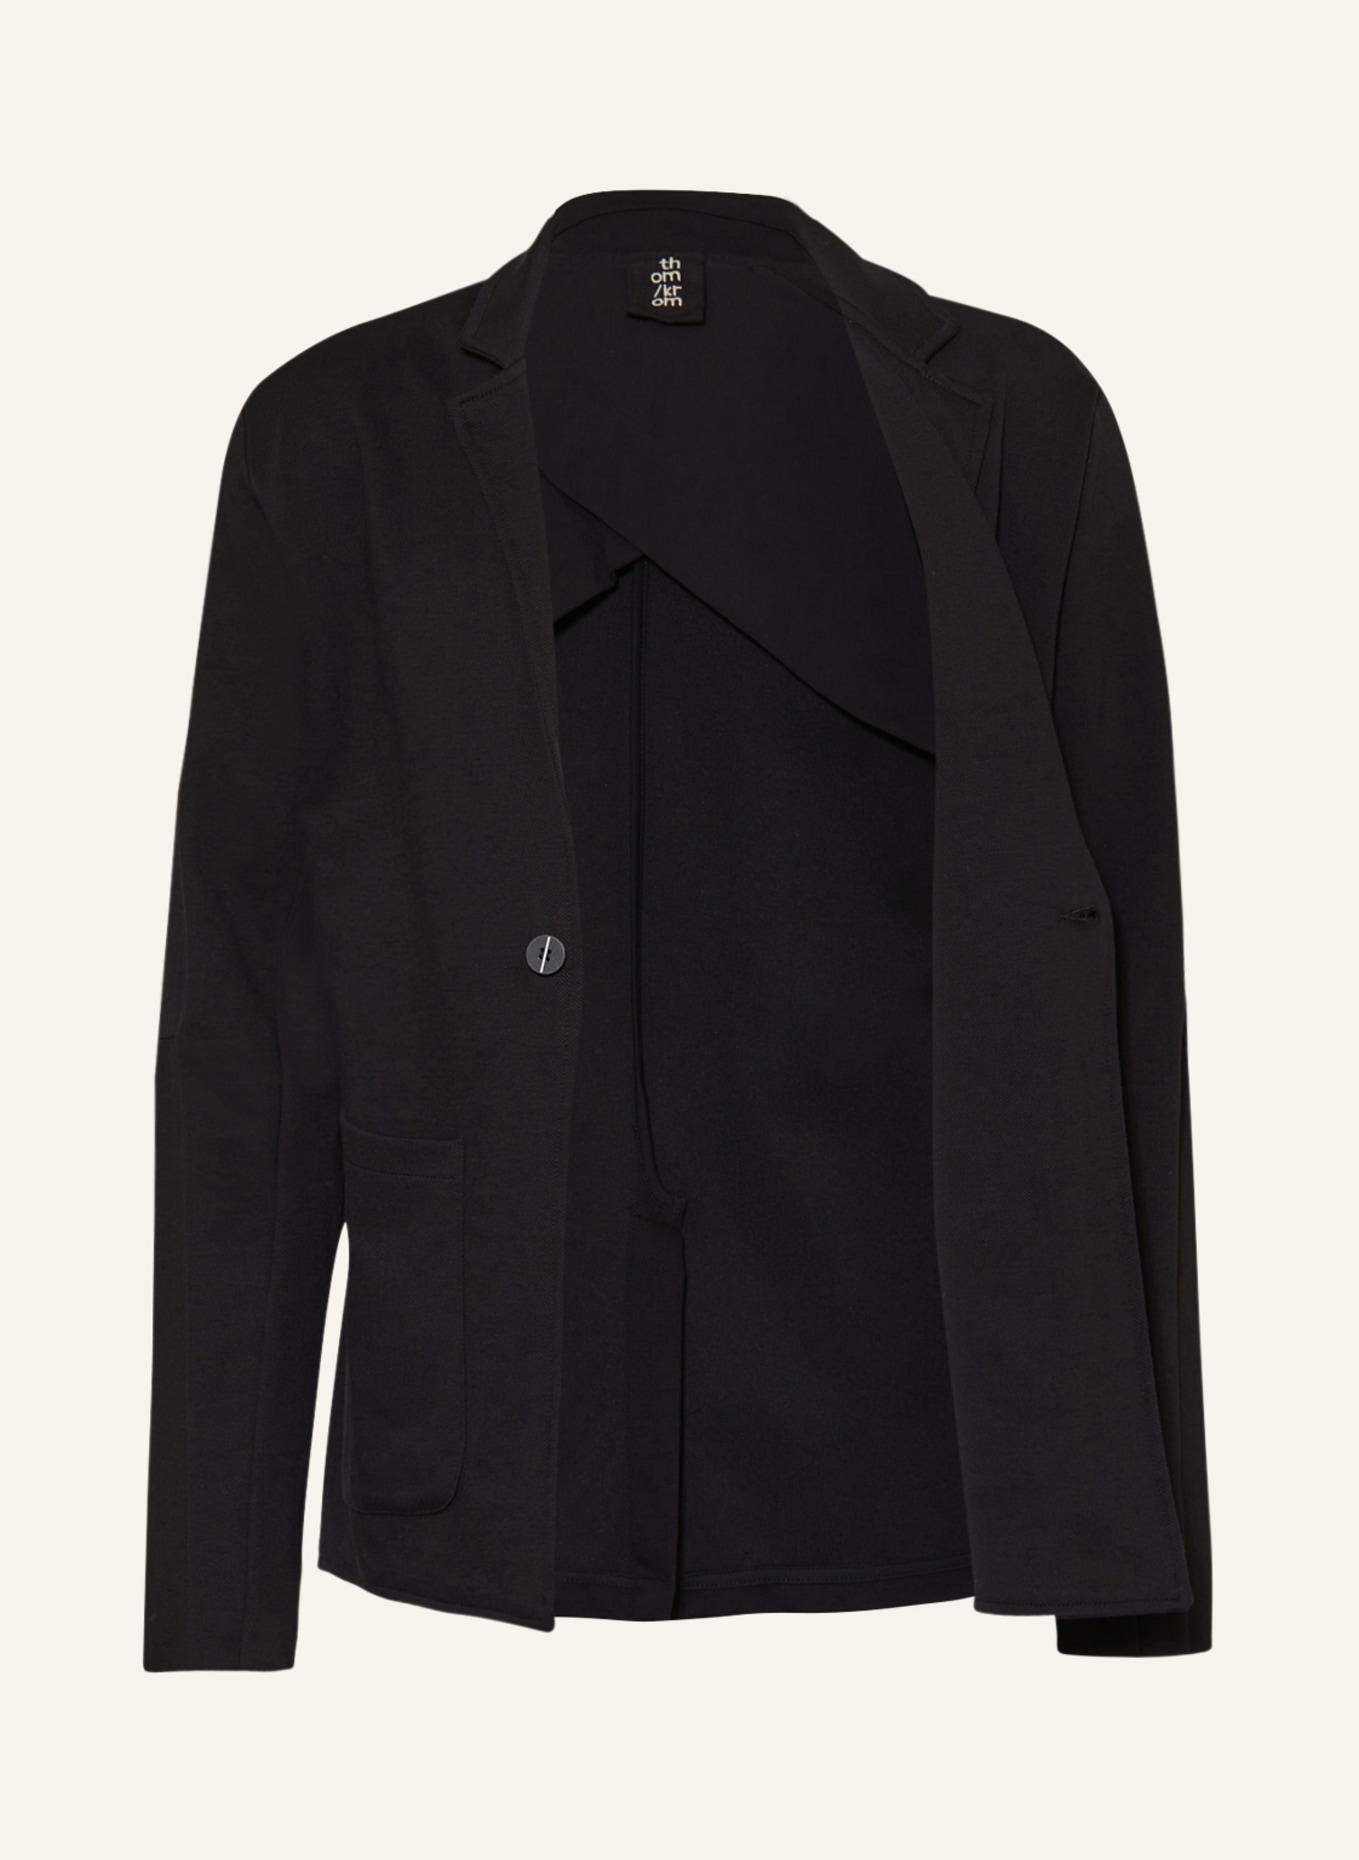 thom/krom Jersey jacket extra slim fit, Color: BLACK (Image 4)